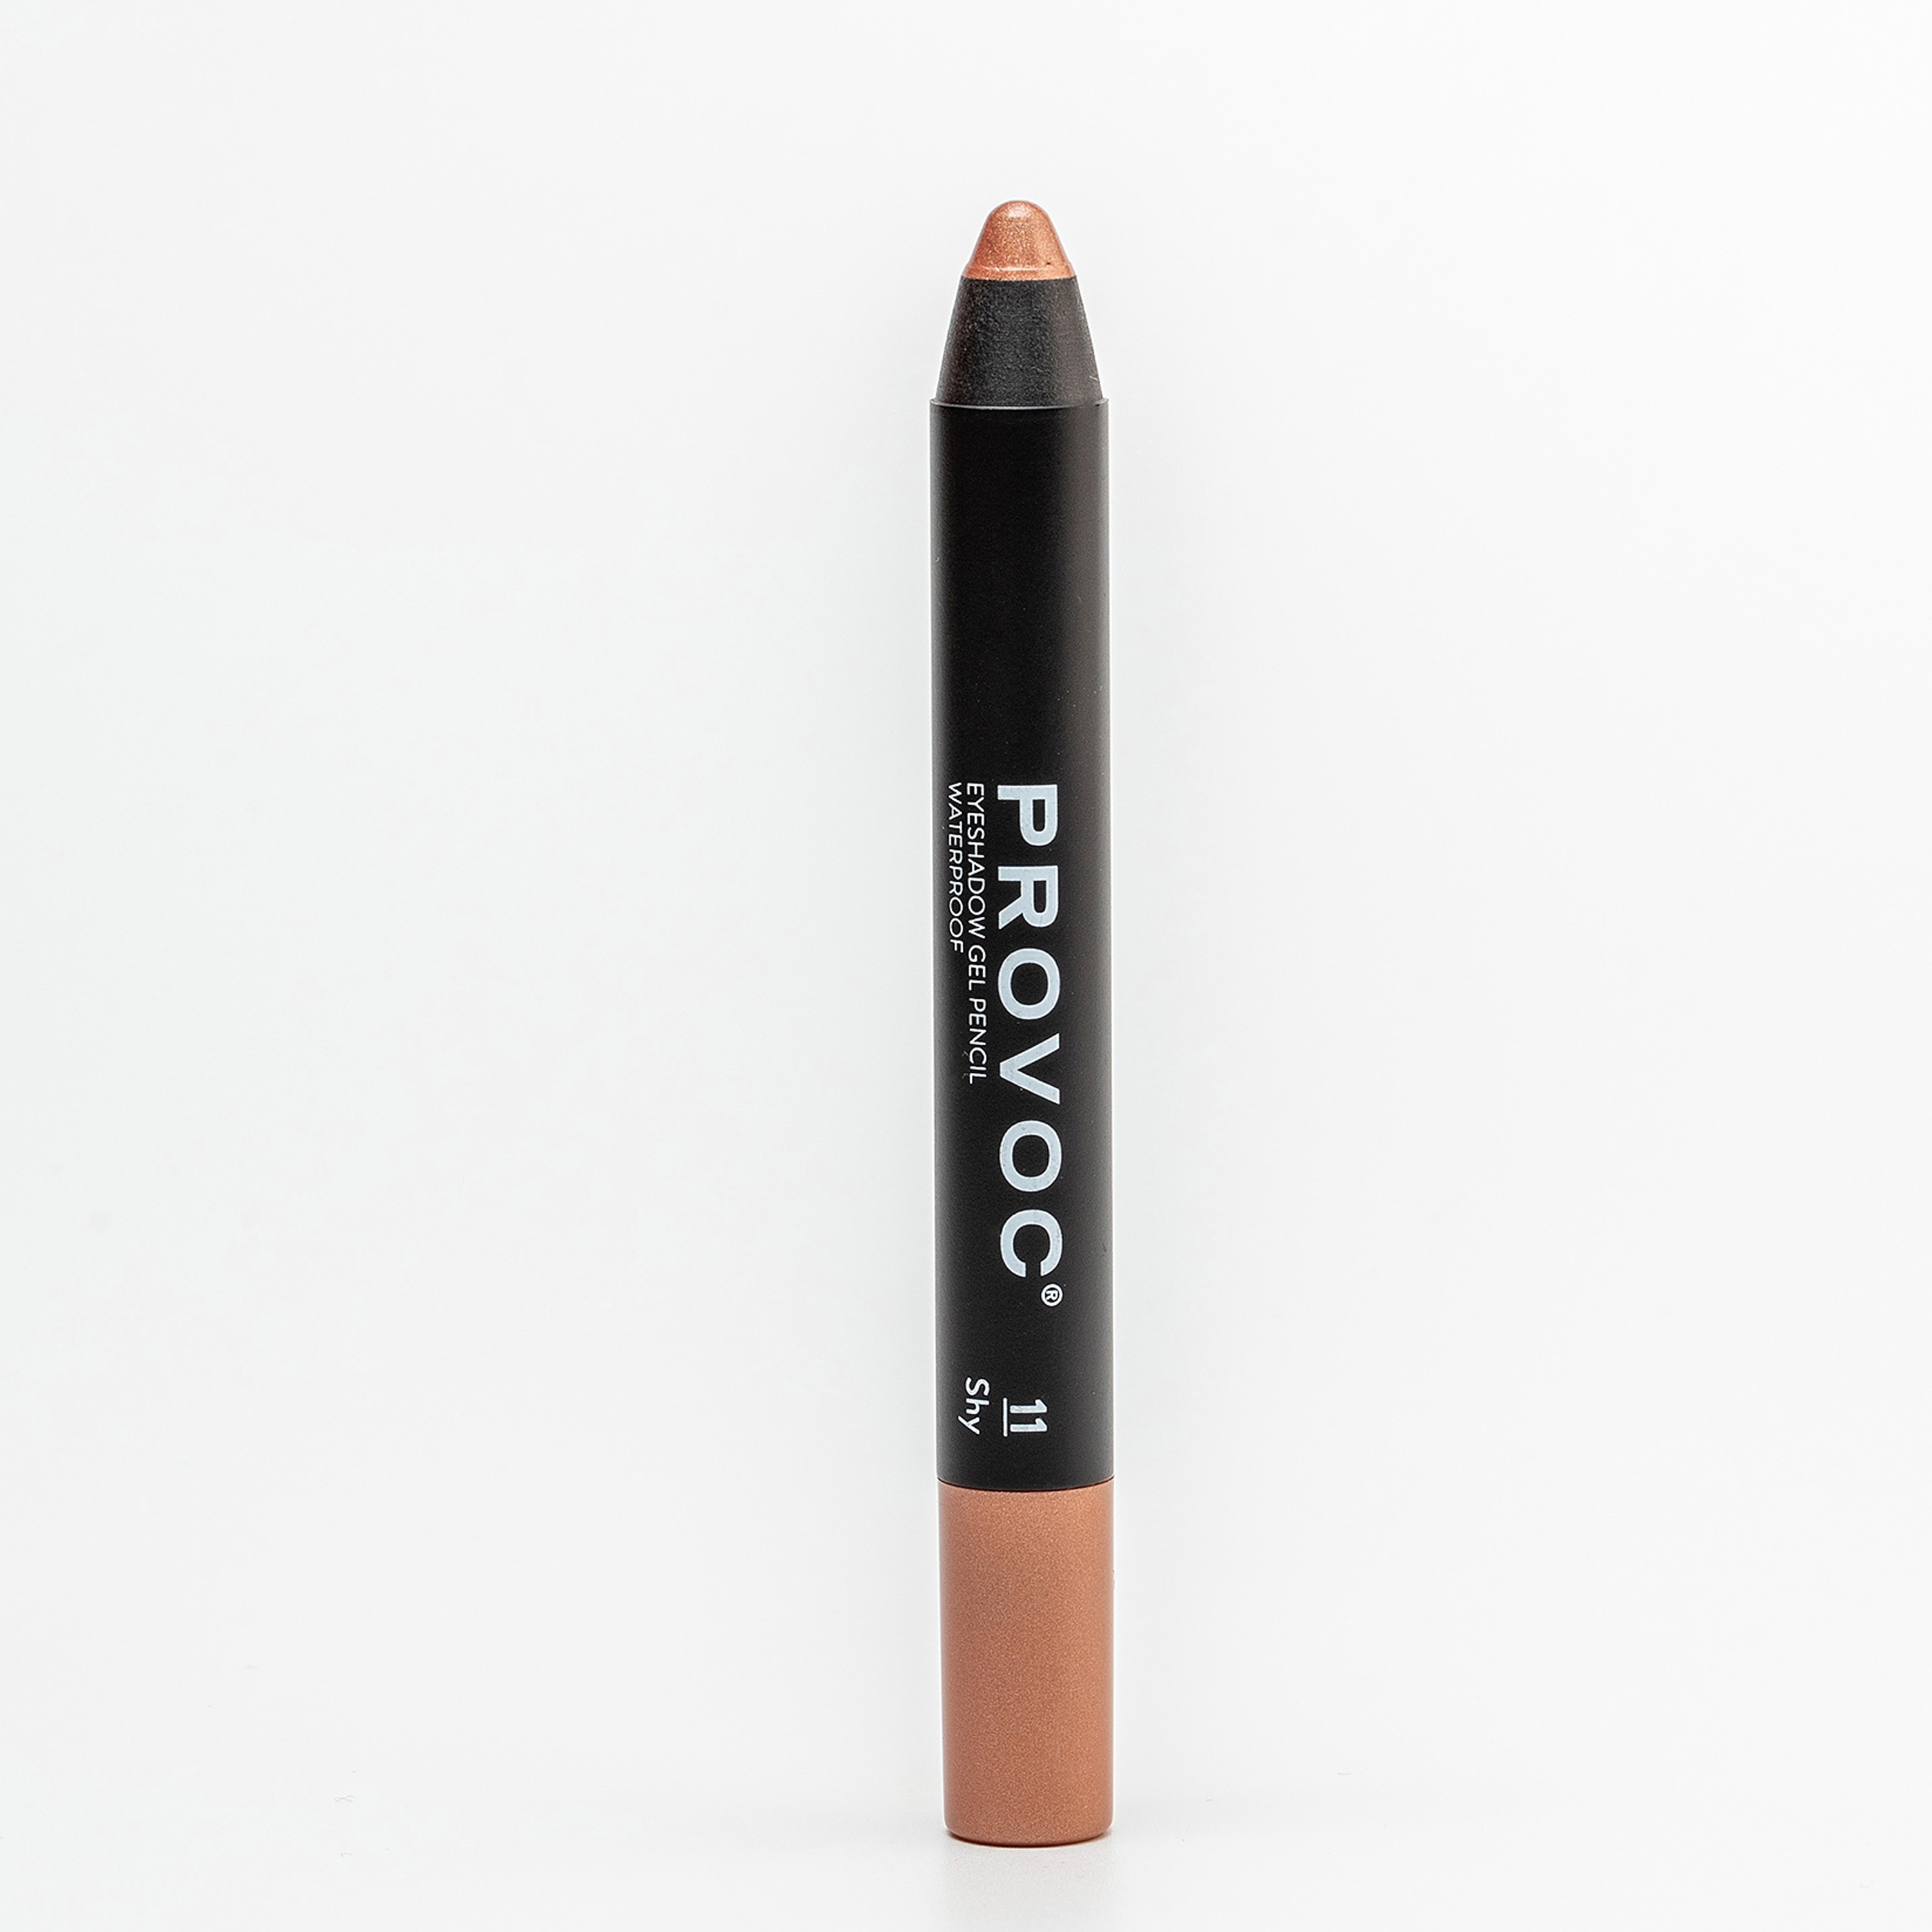 Тени-карандаш PROVOC Eyeshadow Pencil L водостойкие, шиммер 11 персиковый, 2,3 г тени карандаш provoc eyeshadow pencil l водостойкие шиммер 11 персиковый 2 3 г